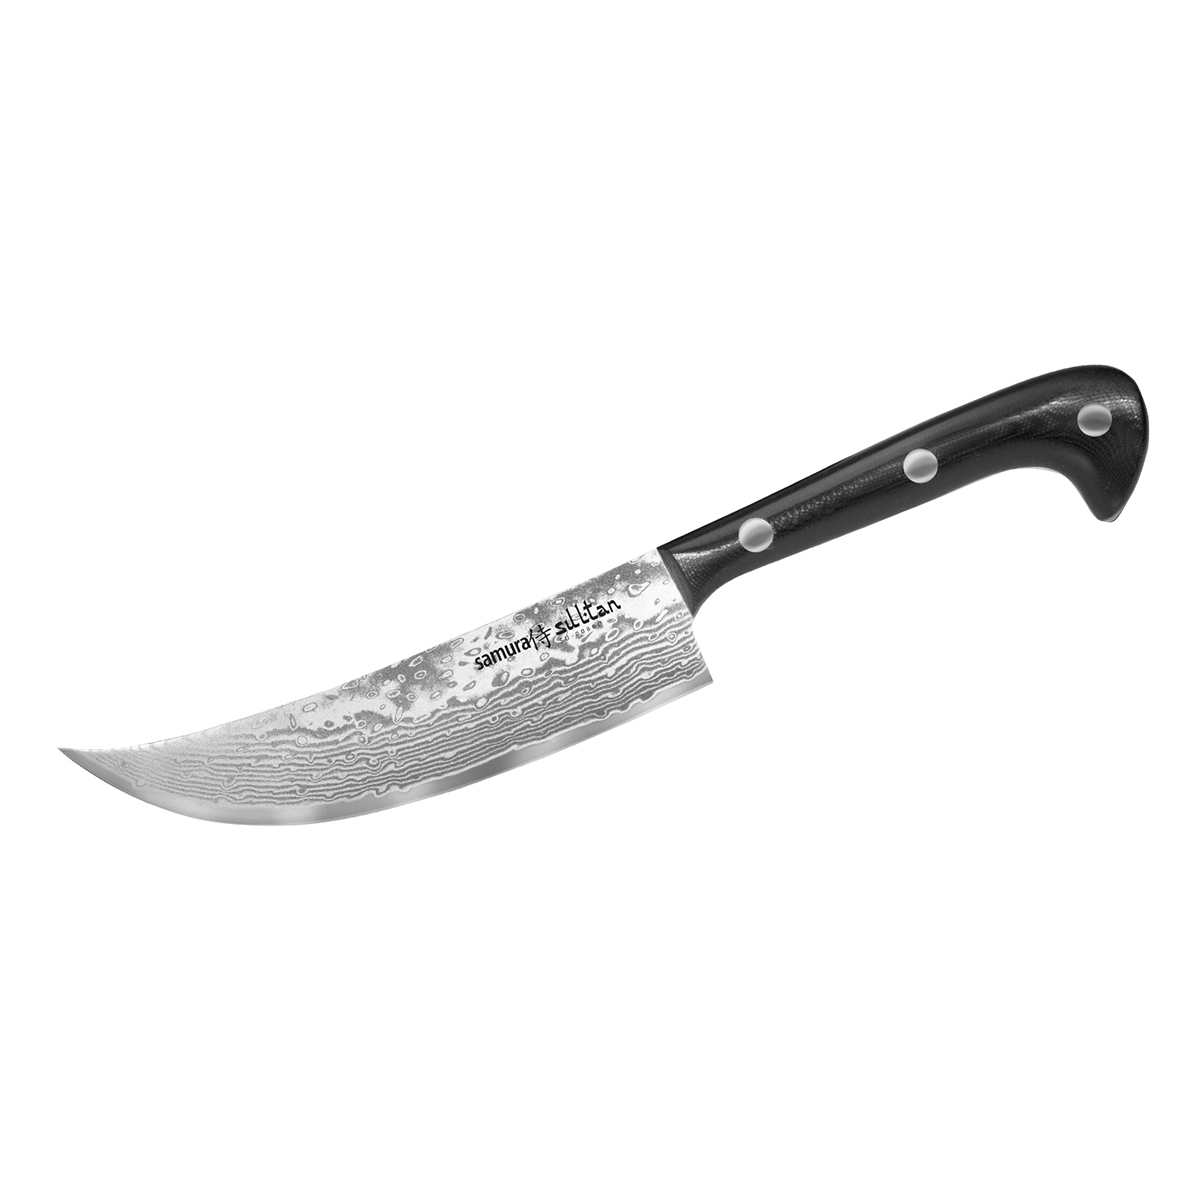 Pchak Knife 15.9cm (Black), SULTAN - SAMURA®️